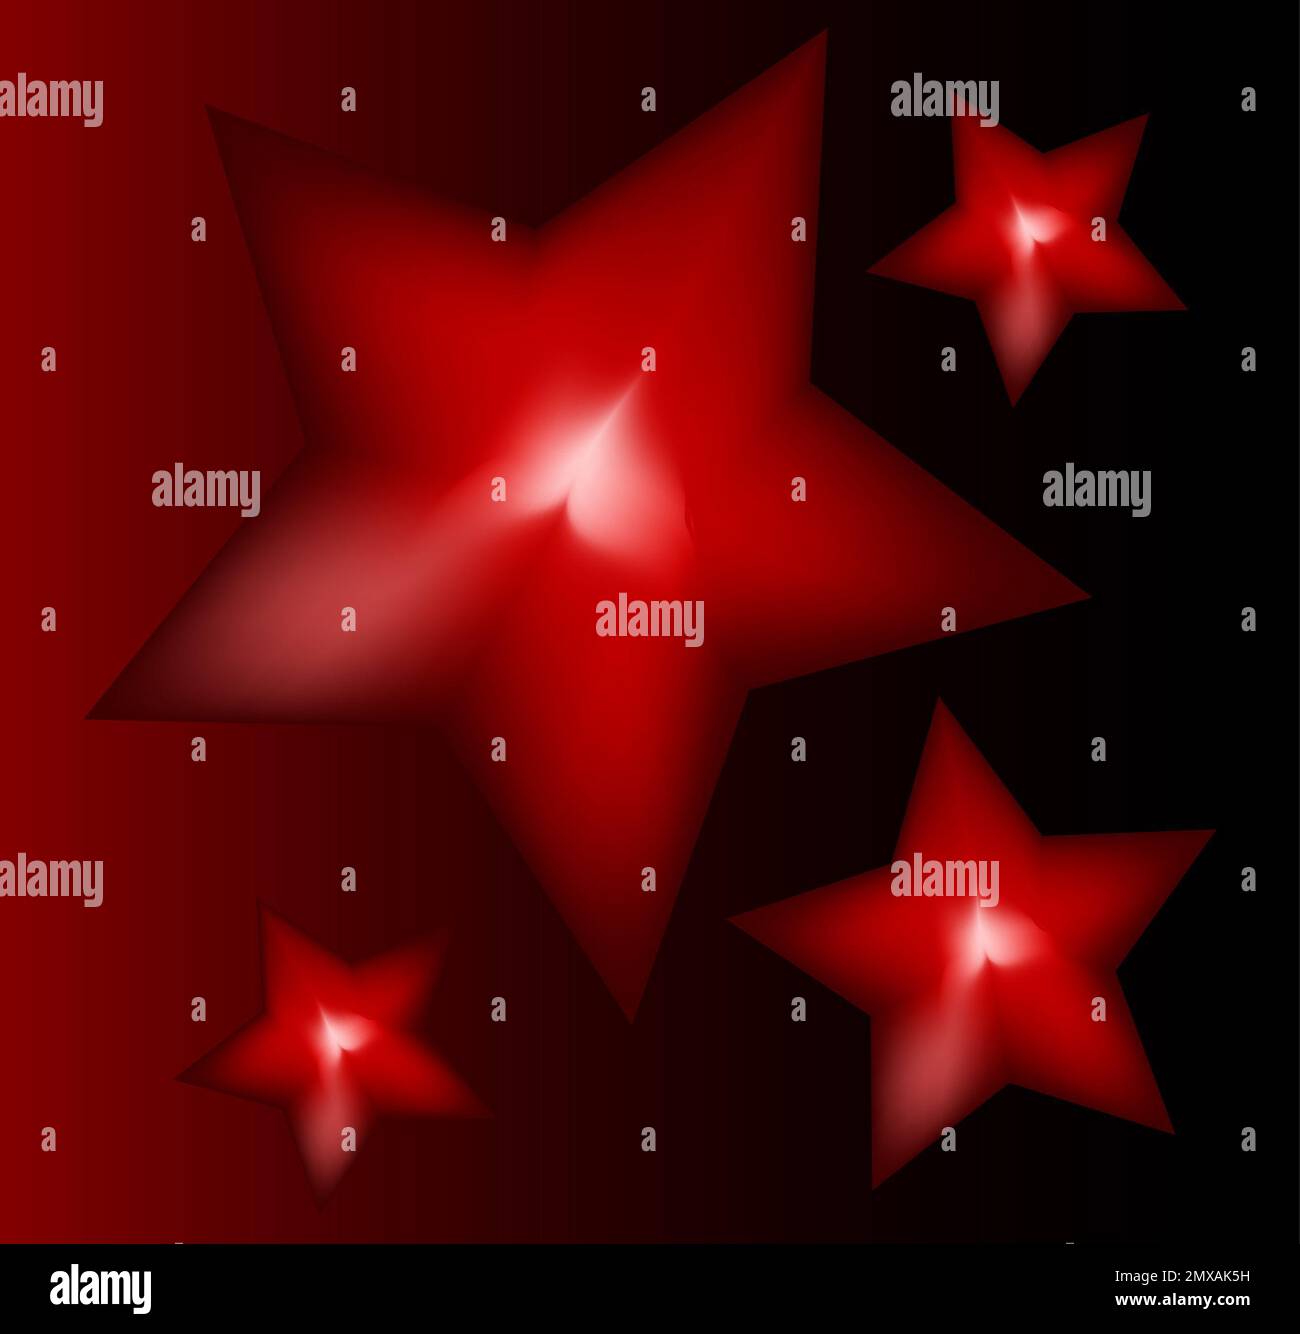 Étoiles tridimensionnelles, étoiles rouges, illustration des étoiles, couleurs rouge, noir et blanc, signe et étiquette Banque D'Images